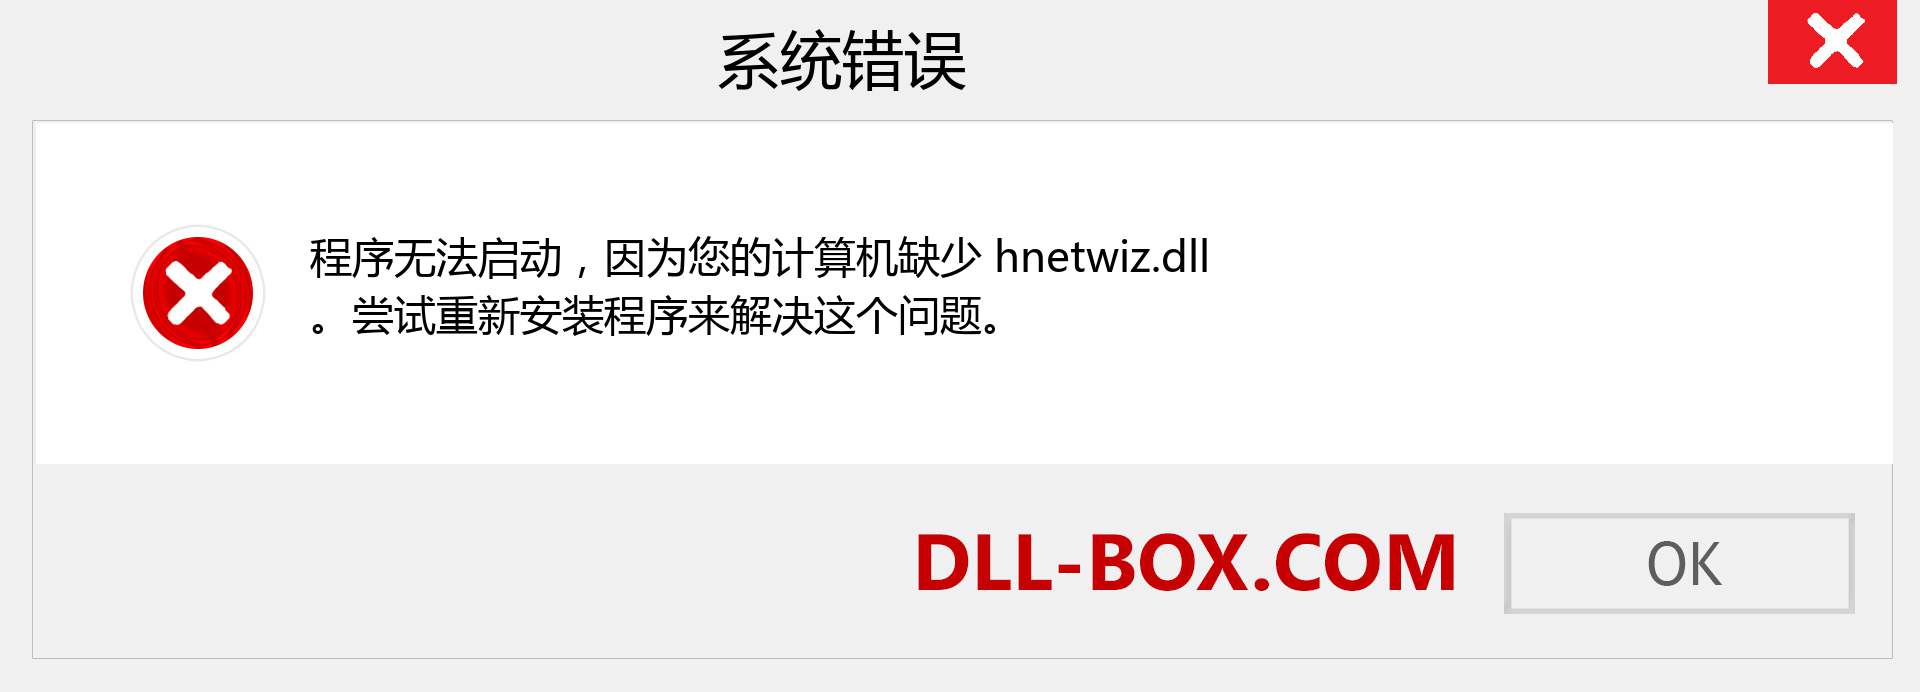 hnetwiz.dll 文件丢失？。 适用于 Windows 7、8、10 的下载 - 修复 Windows、照片、图像上的 hnetwiz dll 丢失错误